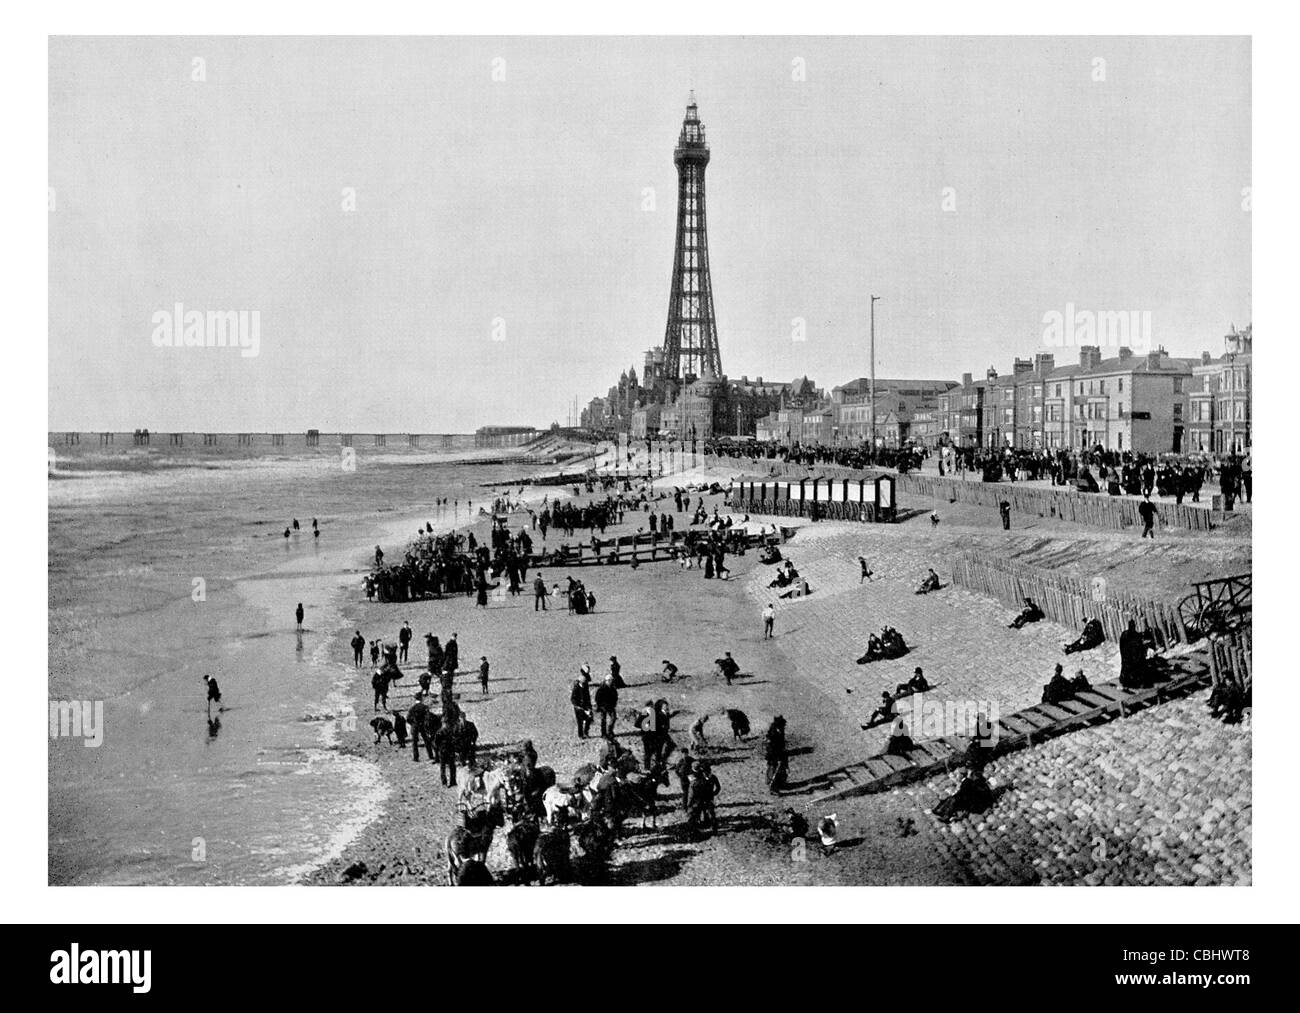 Dalla torre di Blackpool Lancashire Inghilterra Federazione mondiale grandi torri Grade 1 listed building Promenade esplanade pier seaside resort Foto Stock